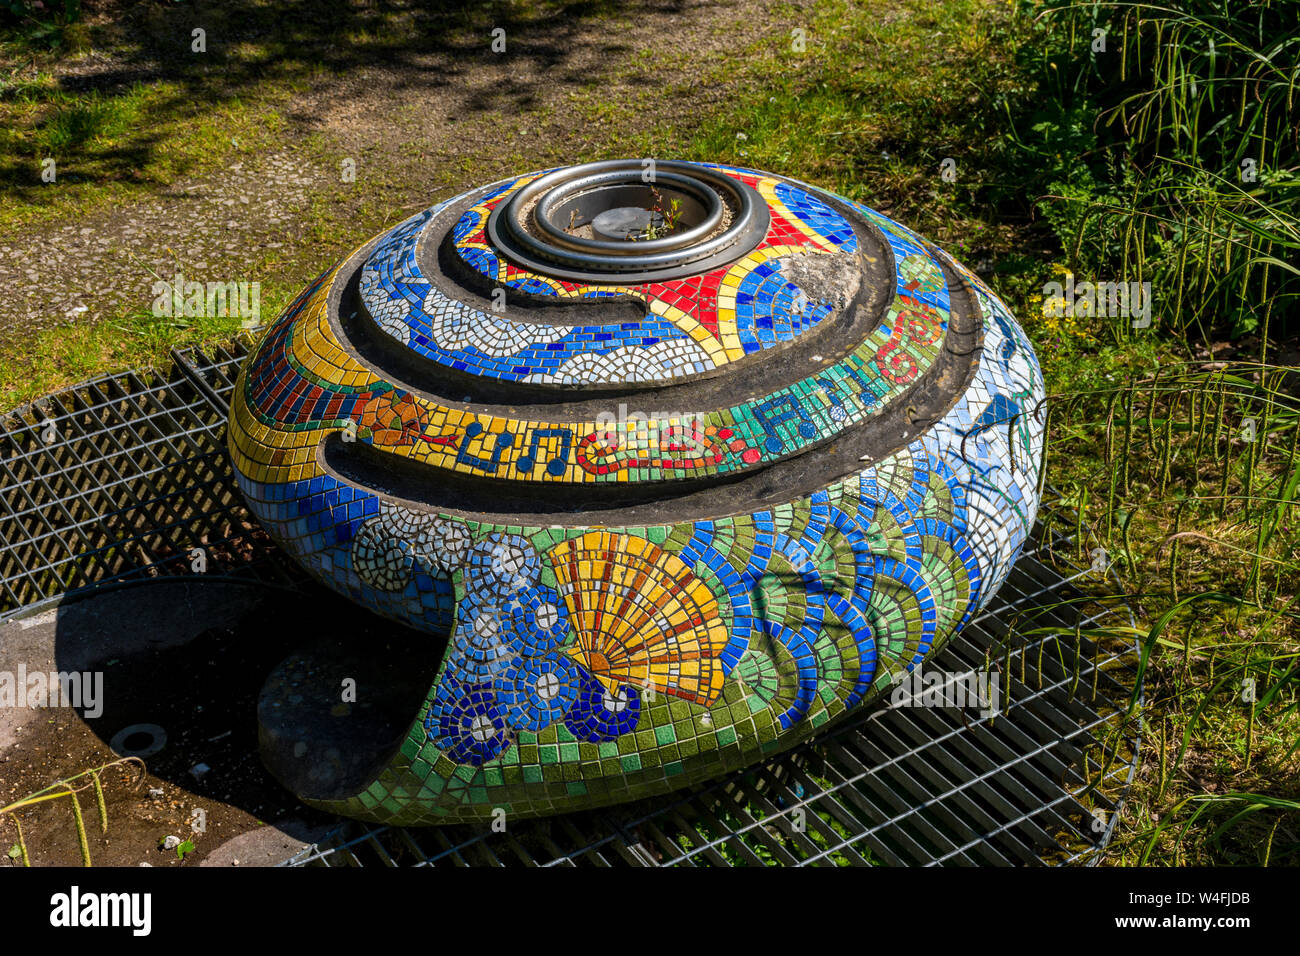 Sculpture de Shell de mosaïques (détails non connu), Hulme Park, Manchester, UK Banque D'Images